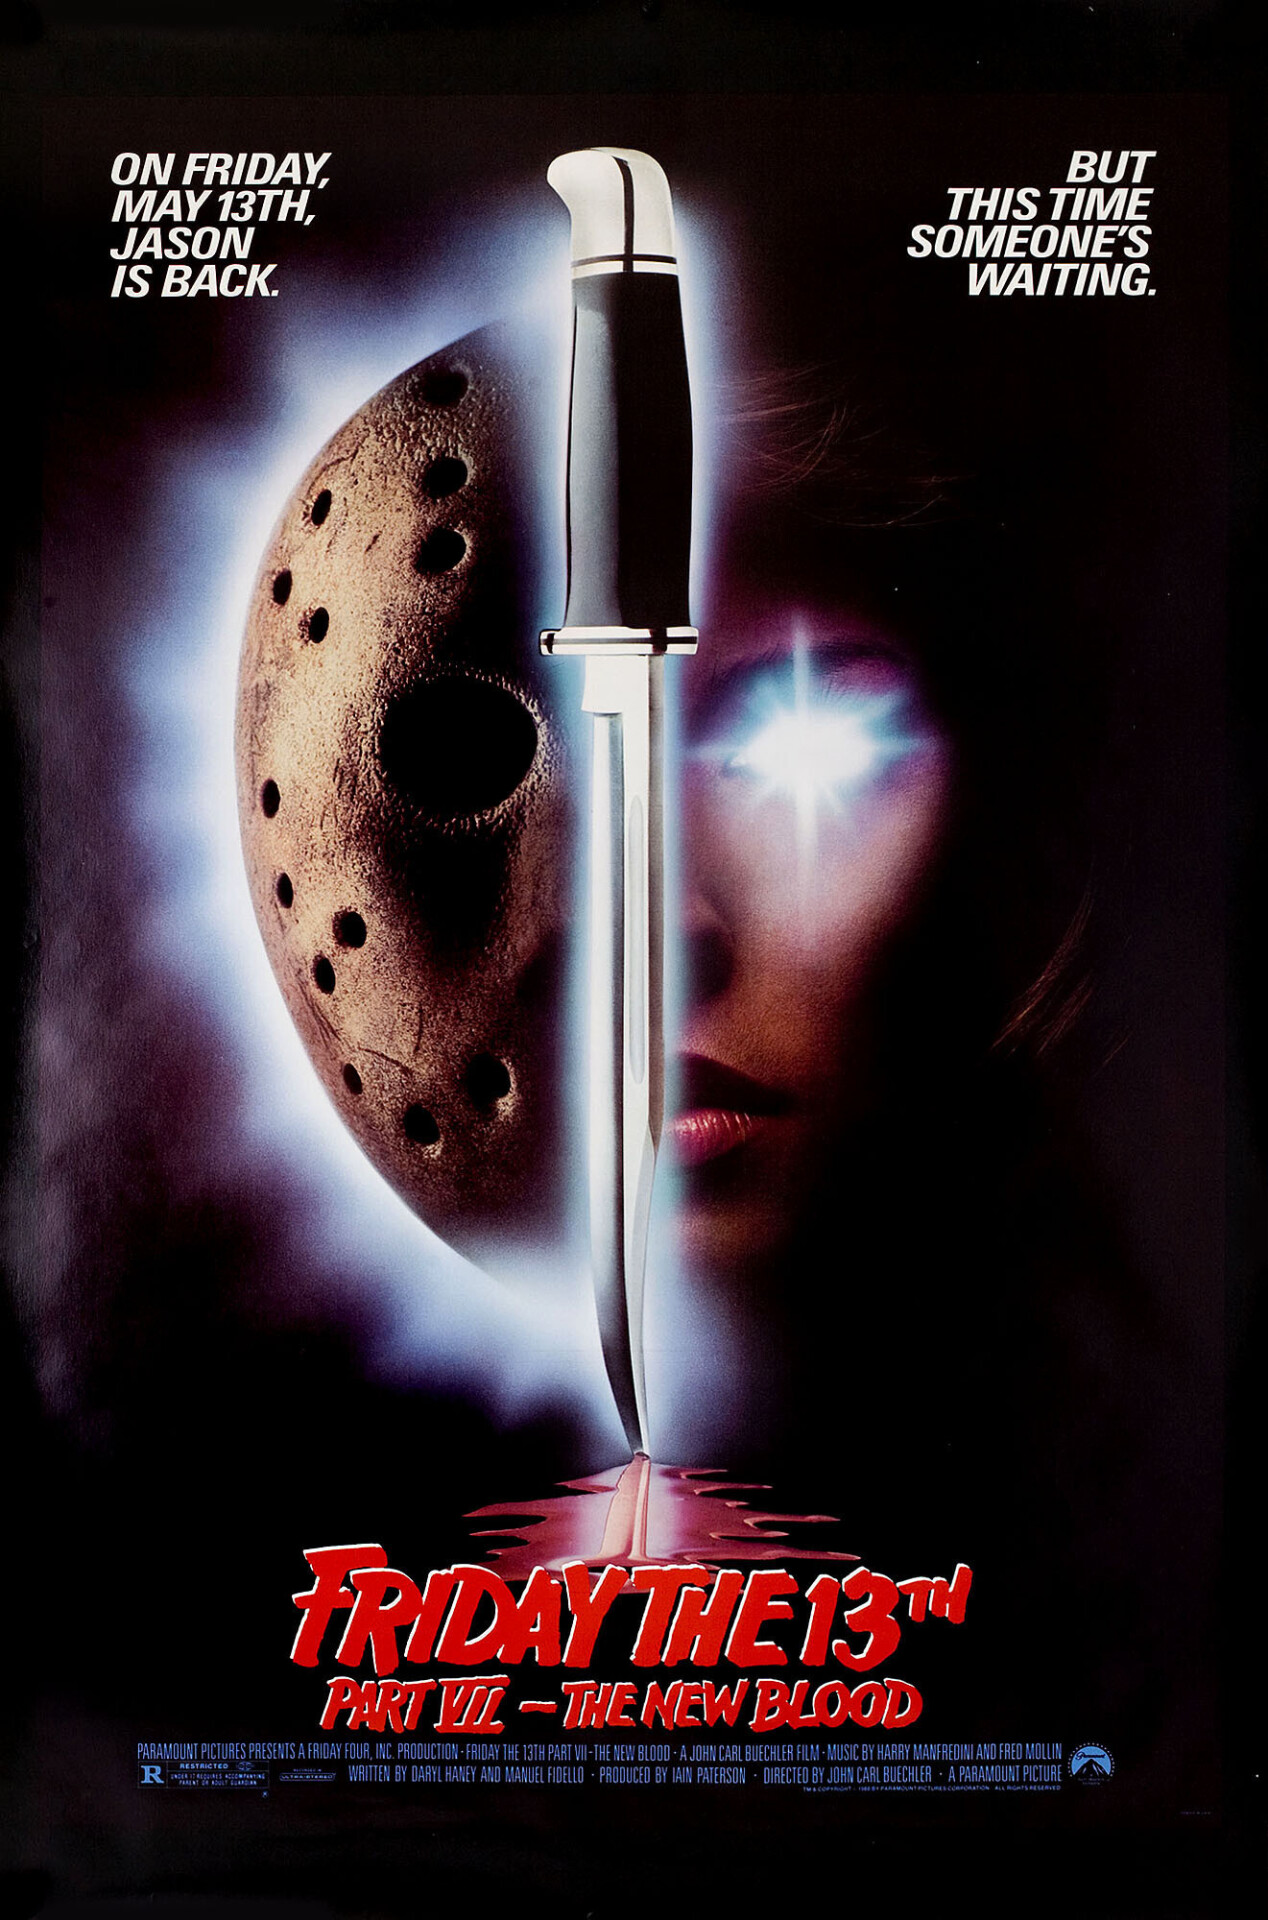 Пятница 13-е – Часть 7: Новая кровь (Friday the 13th Part VII The New Blood, 1988), режиссёр Джон Карл Бюхлер, американский постер к фильму (ужасы, 1988 год)